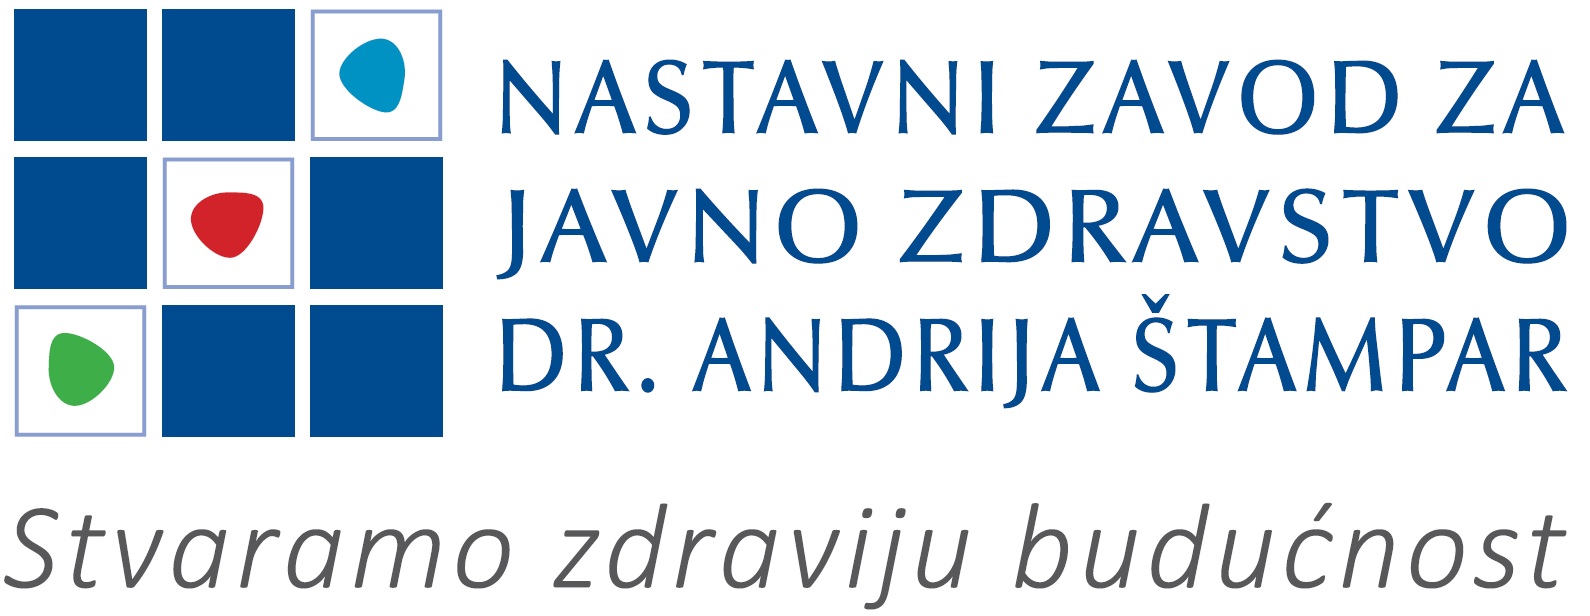 Nastavni zavod za javno zdravstvo “Dr. Andrija Štampar